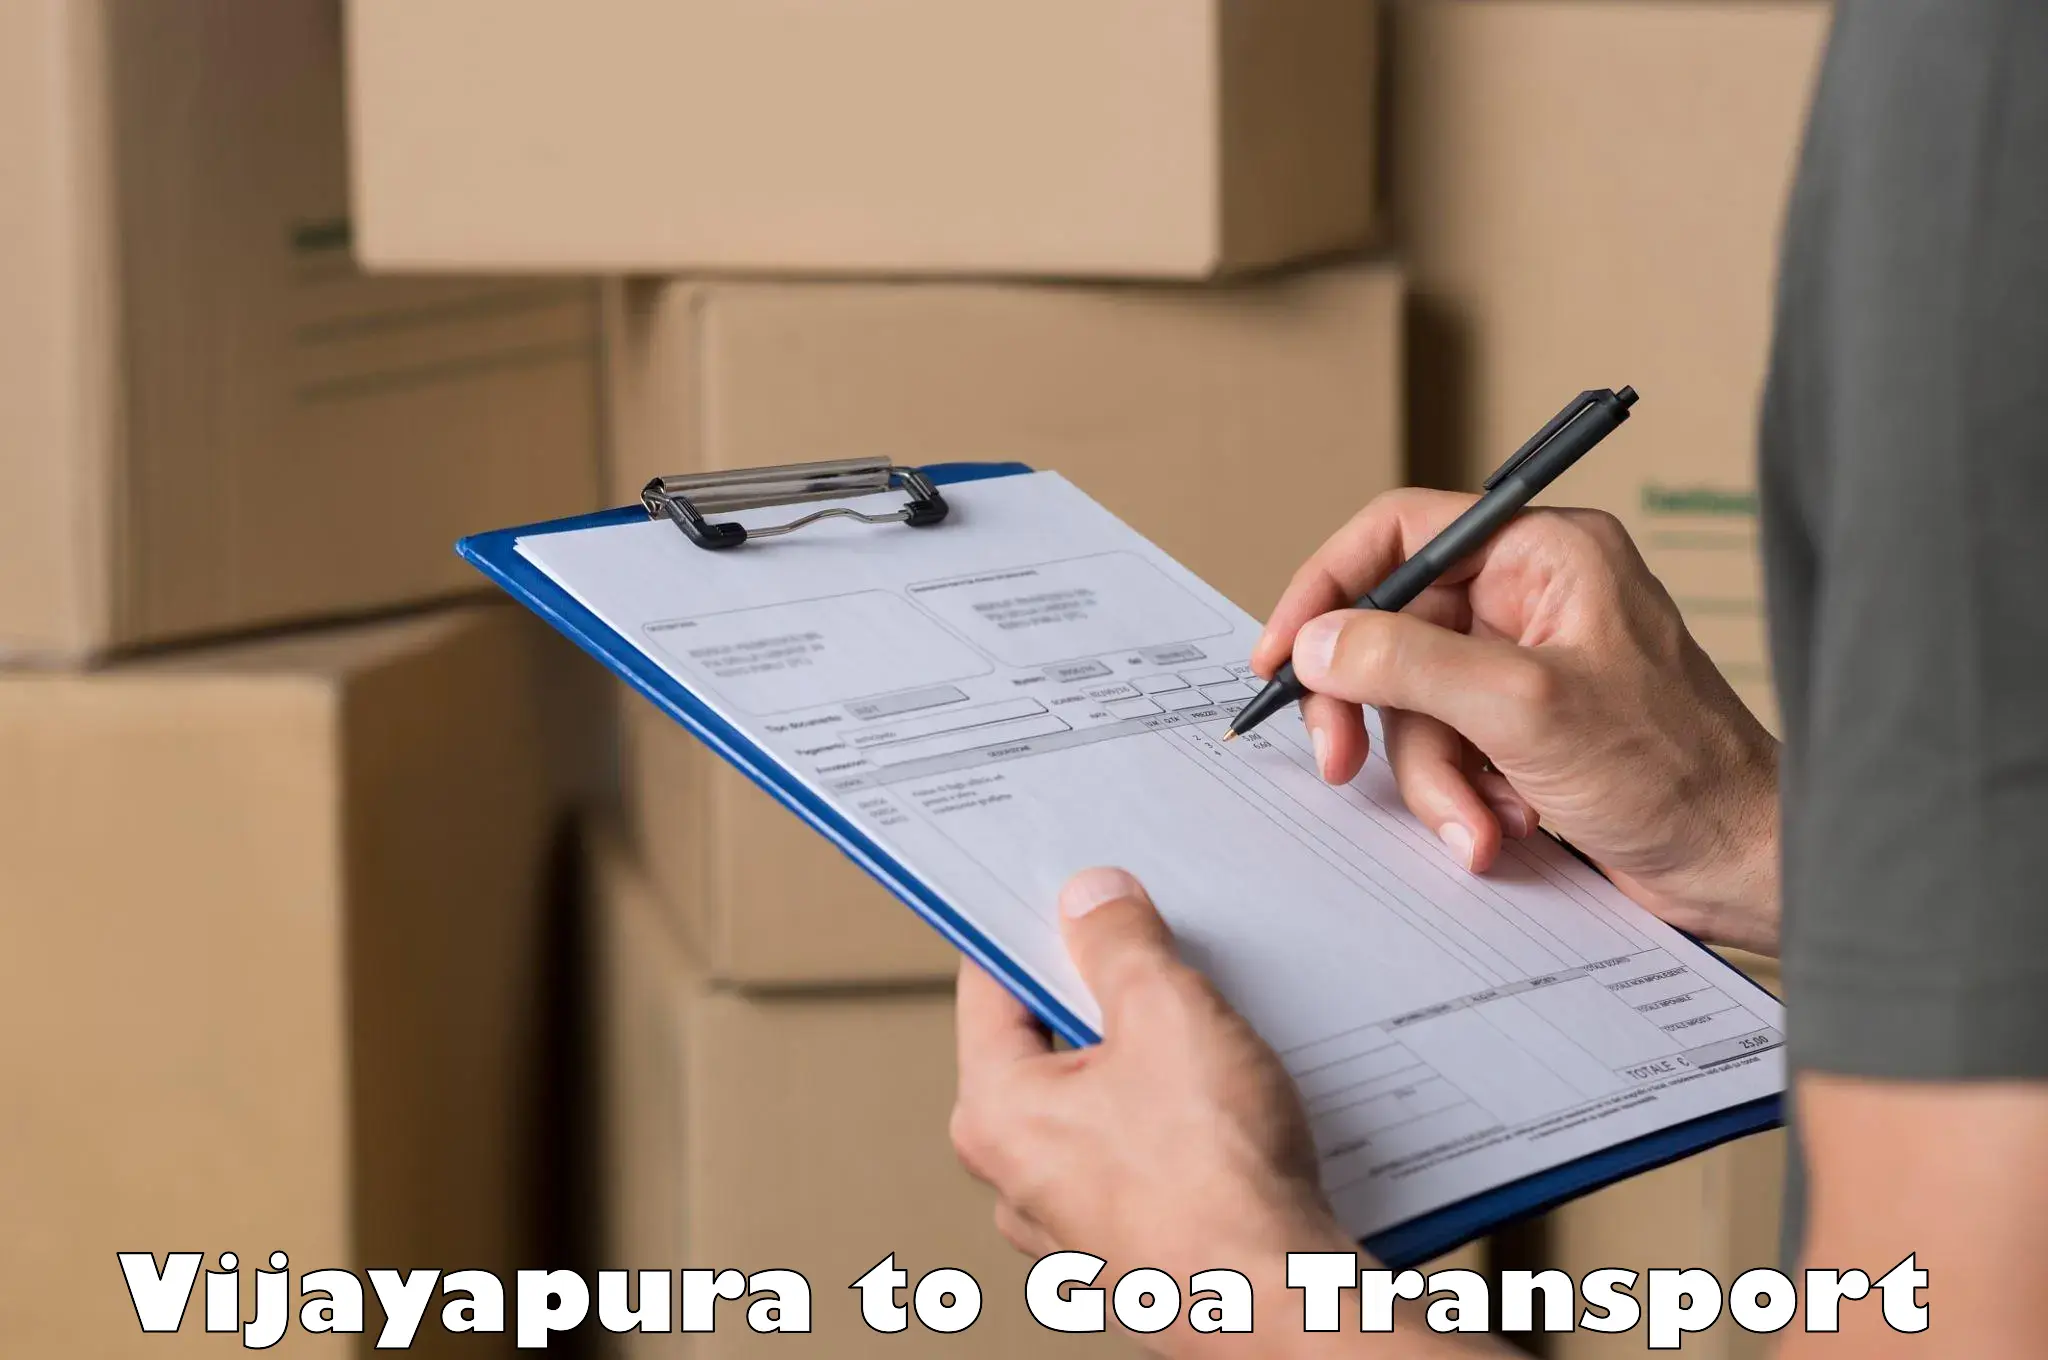 Furniture transport service Vijayapura to Margao